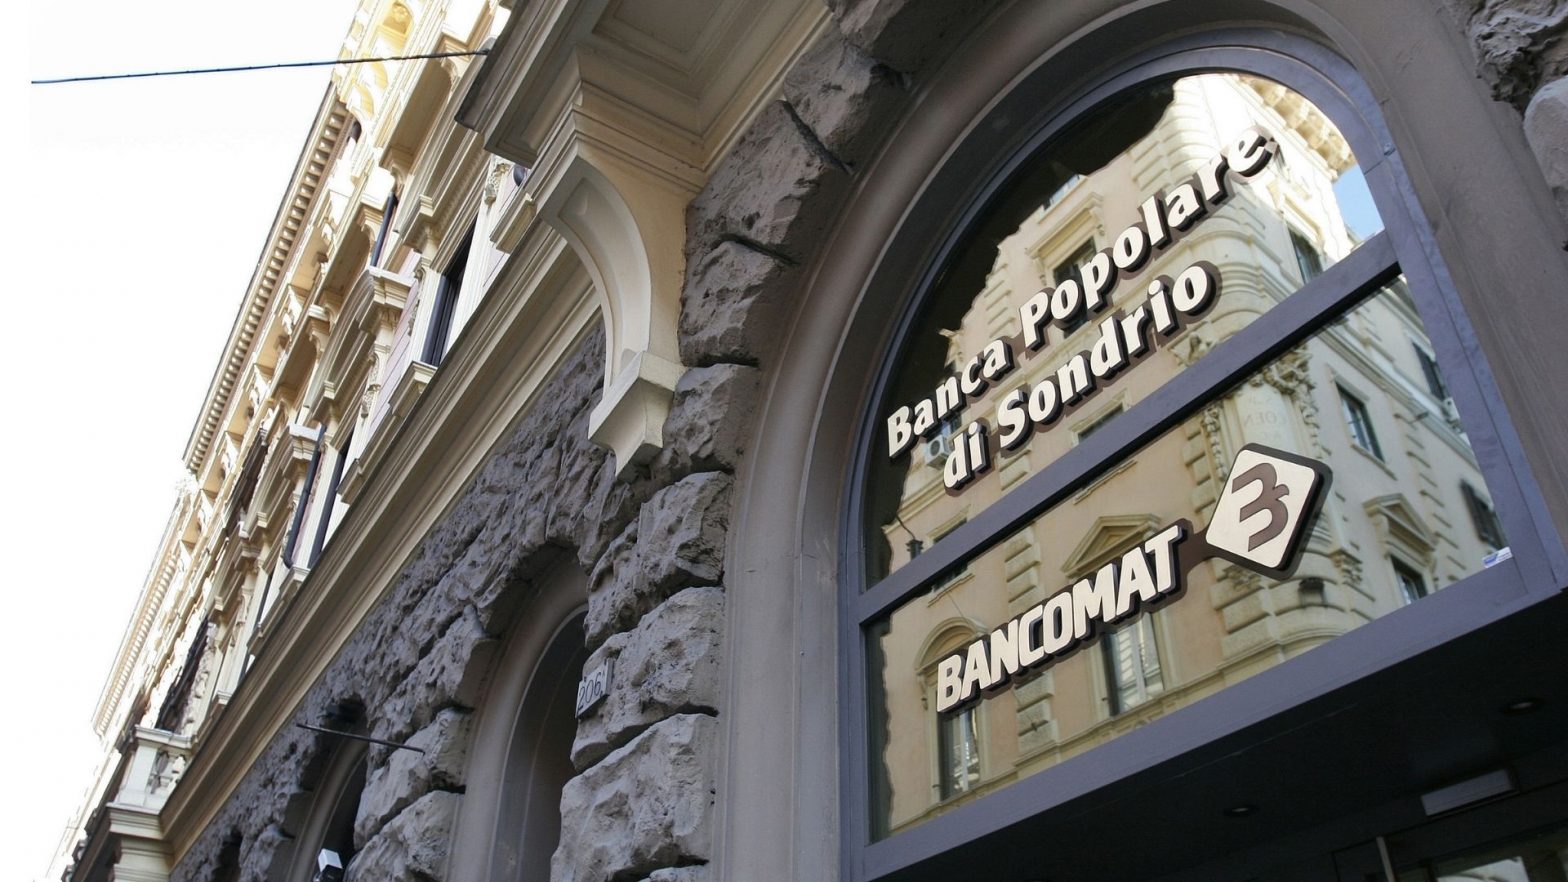 financialounge -  Banca Popolare di Sondrio Borse europee mercati Piazza Affari Unipol